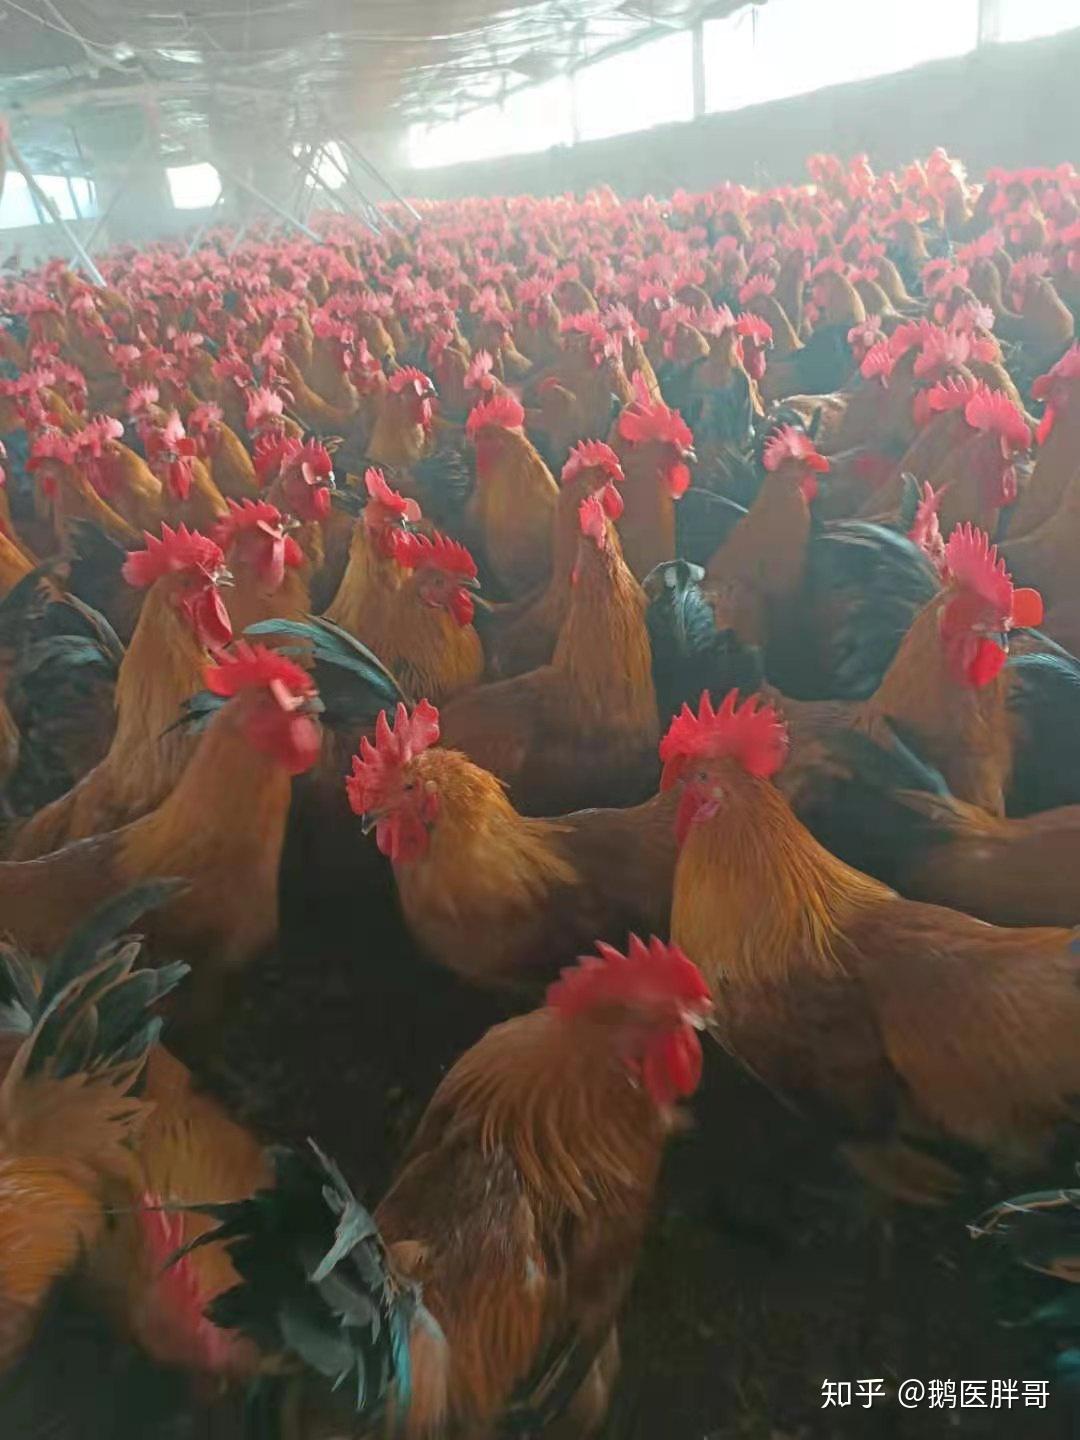 50-120天育成鸡优质引种 60-120日龄育成鸡低价销售 鹤壁 惠民青年鸡养殖中心-食品商务网